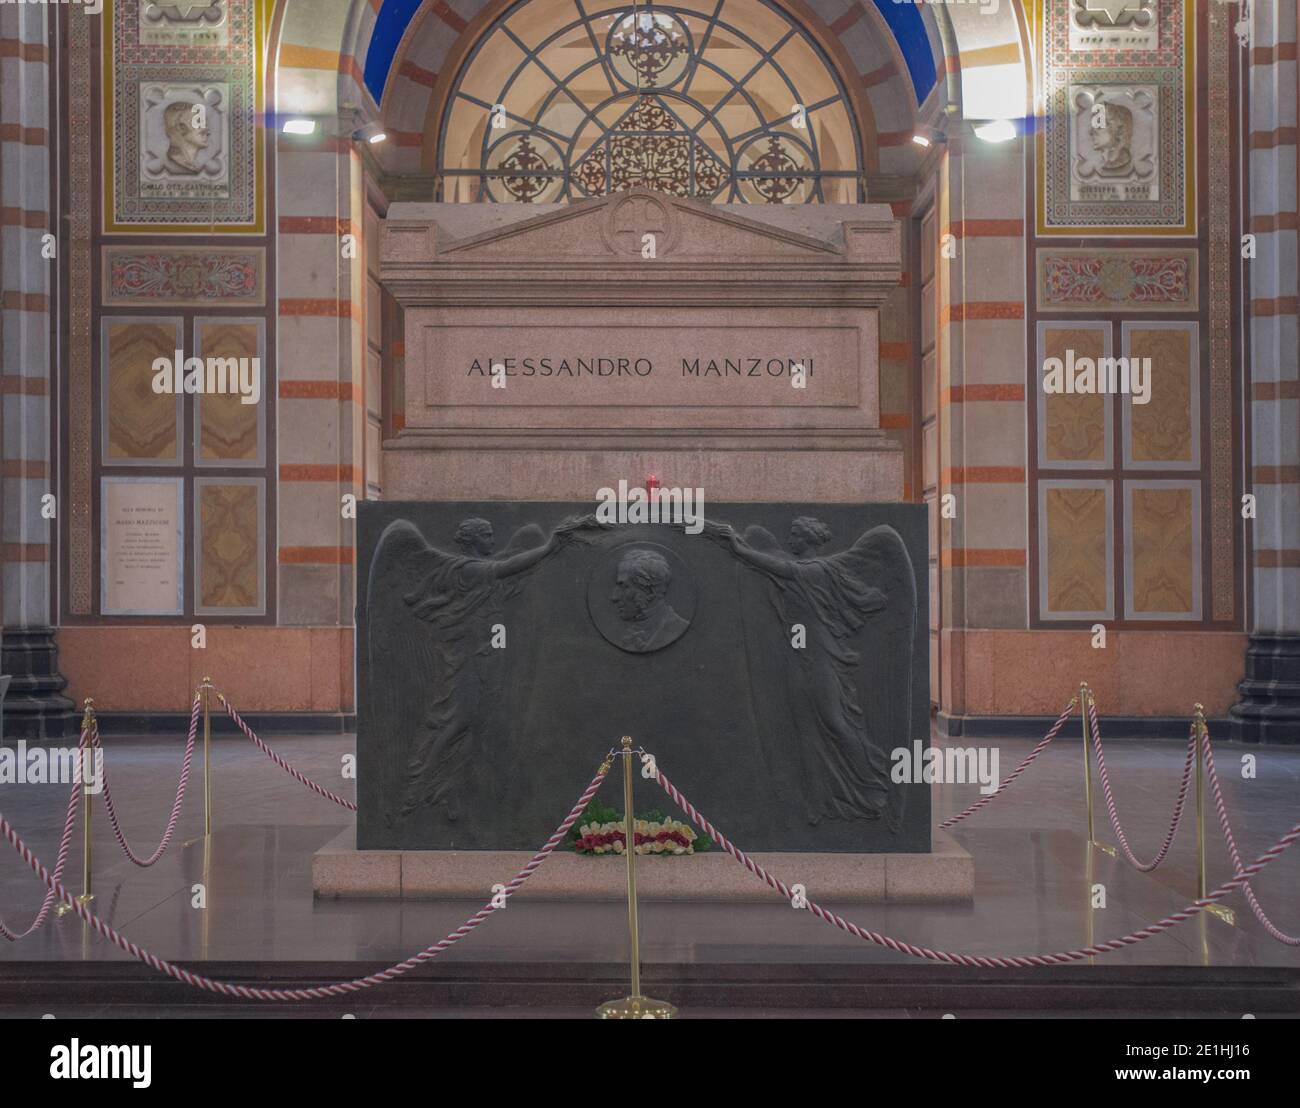 Tomba di Alessandro Manzoni al centro del famedio, sulla base bronzea il ritratto dello scrittore sostenuto dagli angeli. Cimitero monumentale, Milano Foto Stock